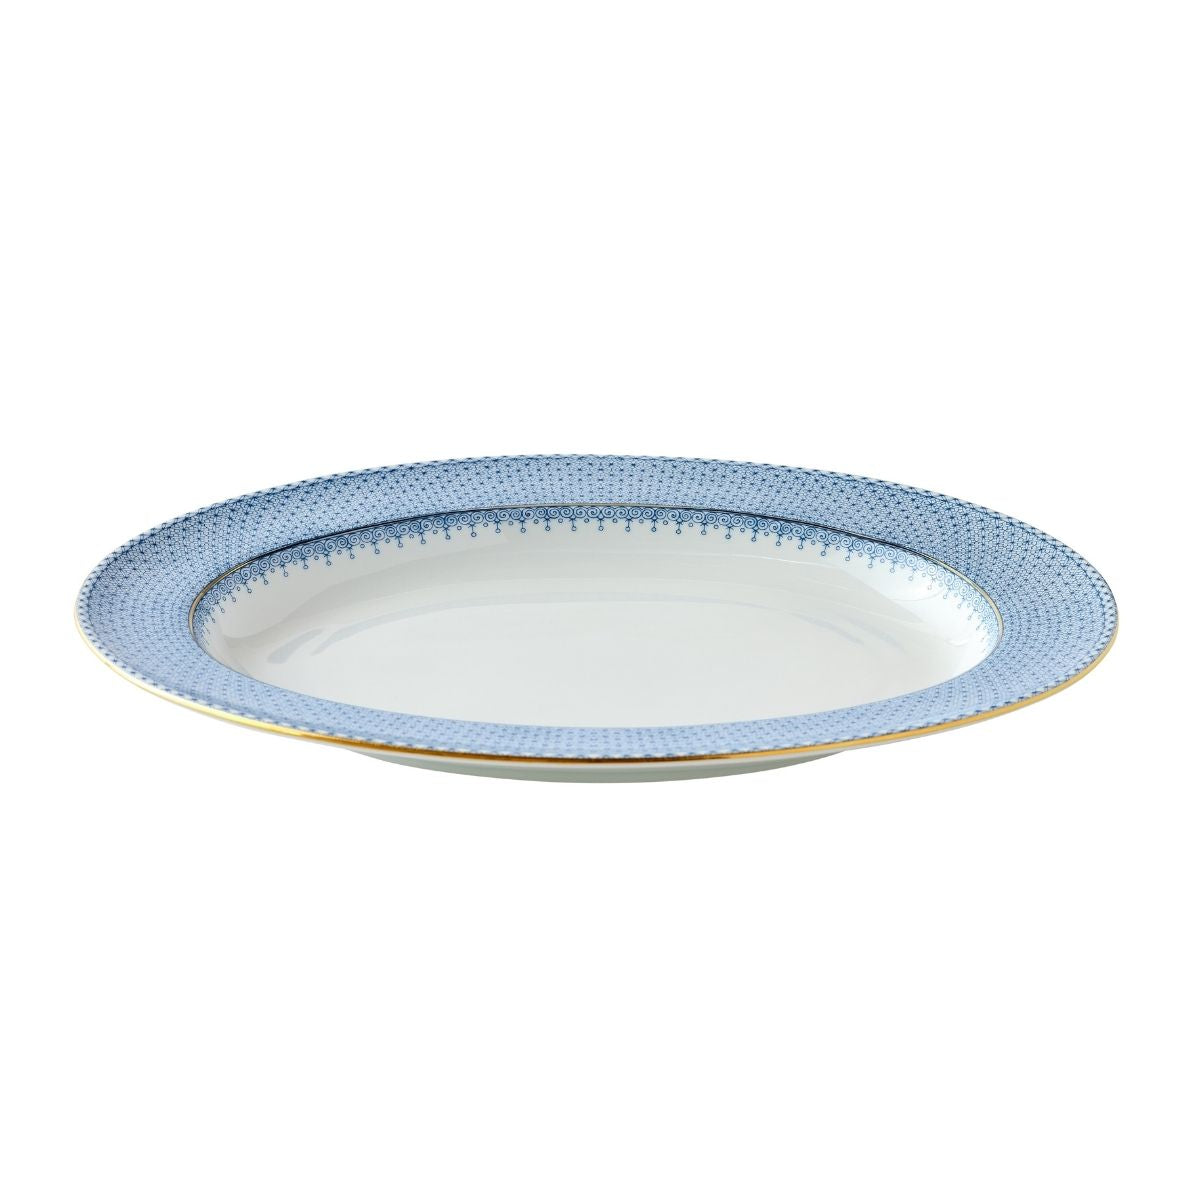 Sky Blue Lace Oval Platter